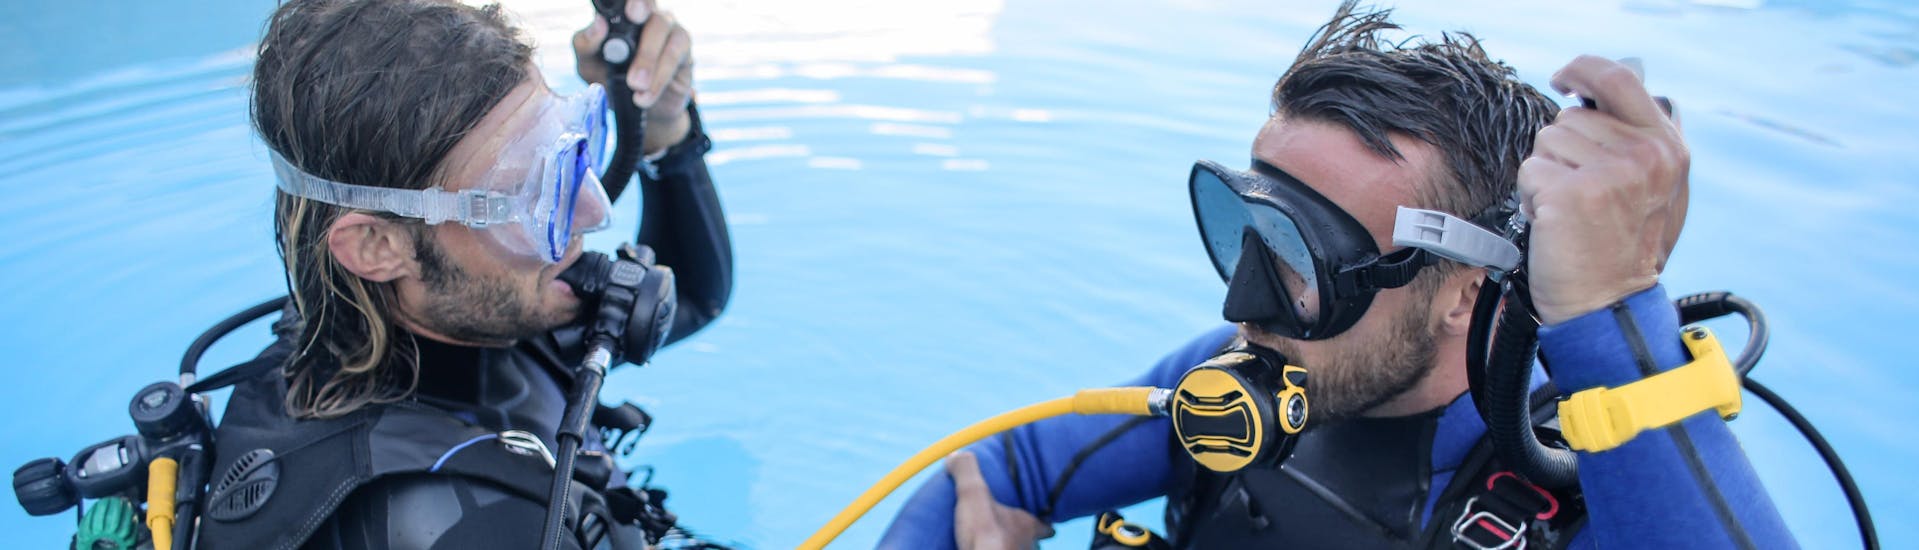 Als onderdeel van het proefduiken voor beginners leert een duikinstructeur een leerling hoe hij zijn duikuitrusting moet gebruiken in een zwembad.